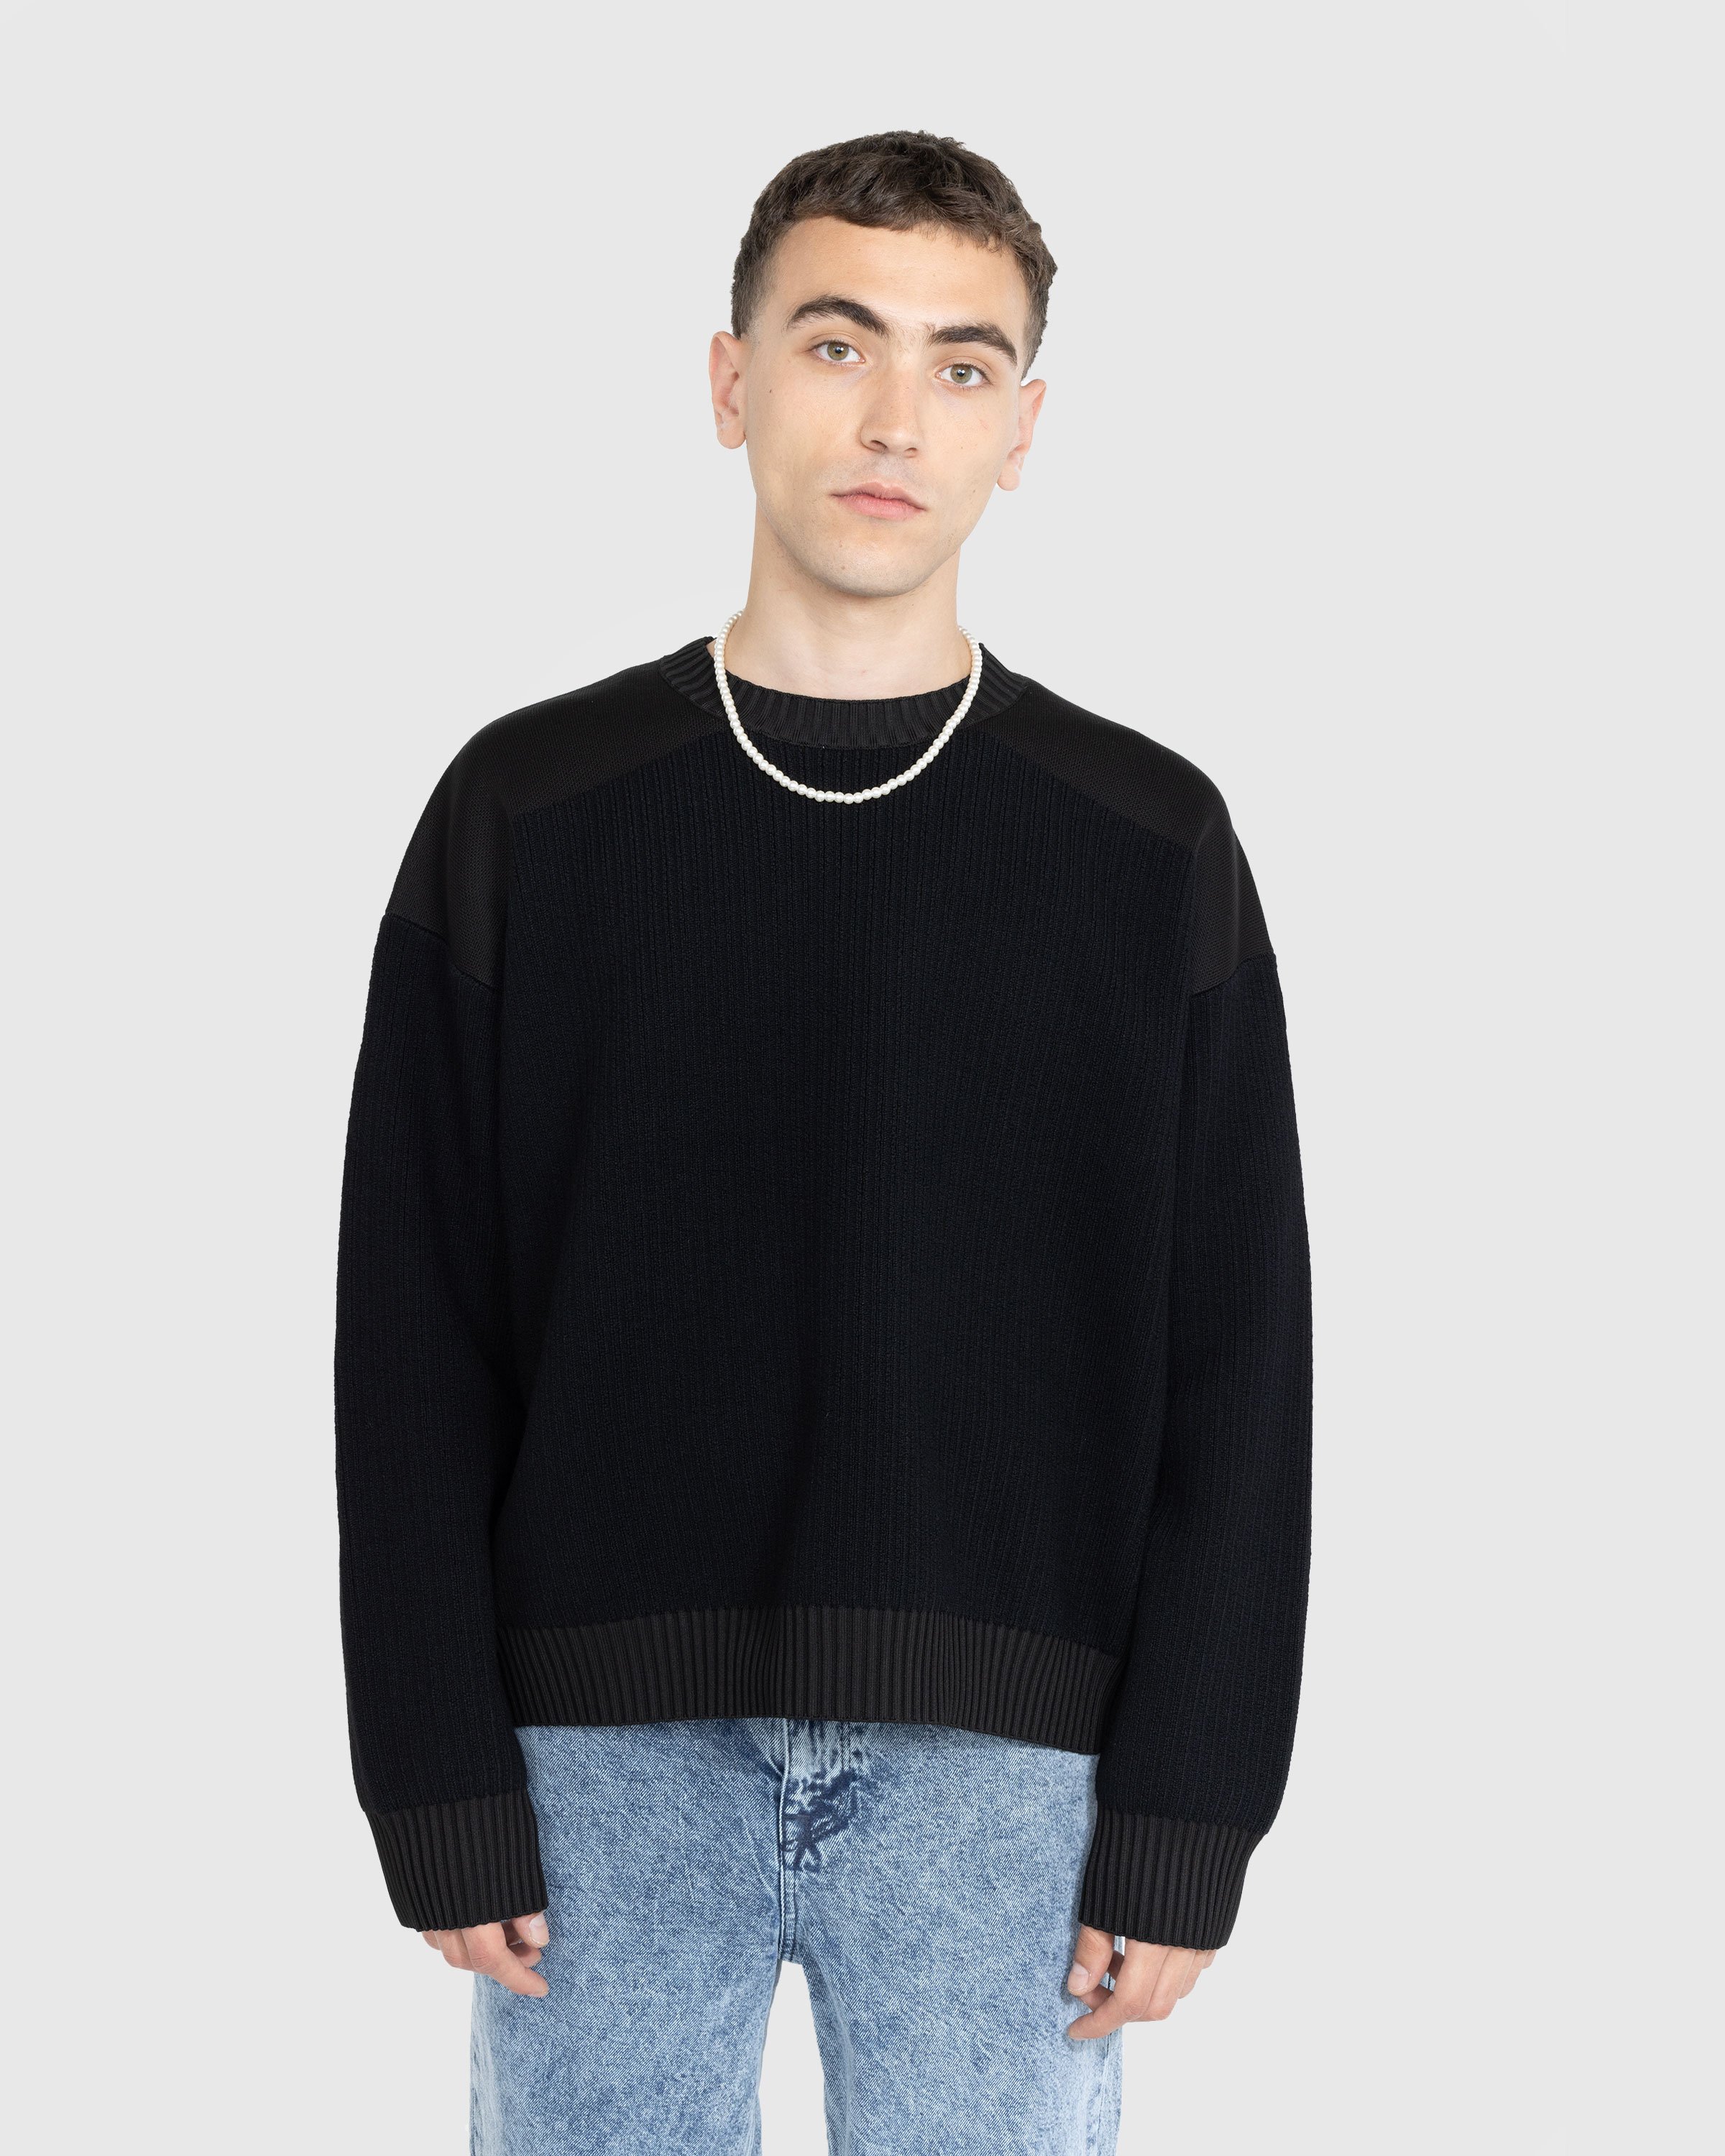 Y-3 – Utility Crewneck Sweater Black | Highsnobiety Shop